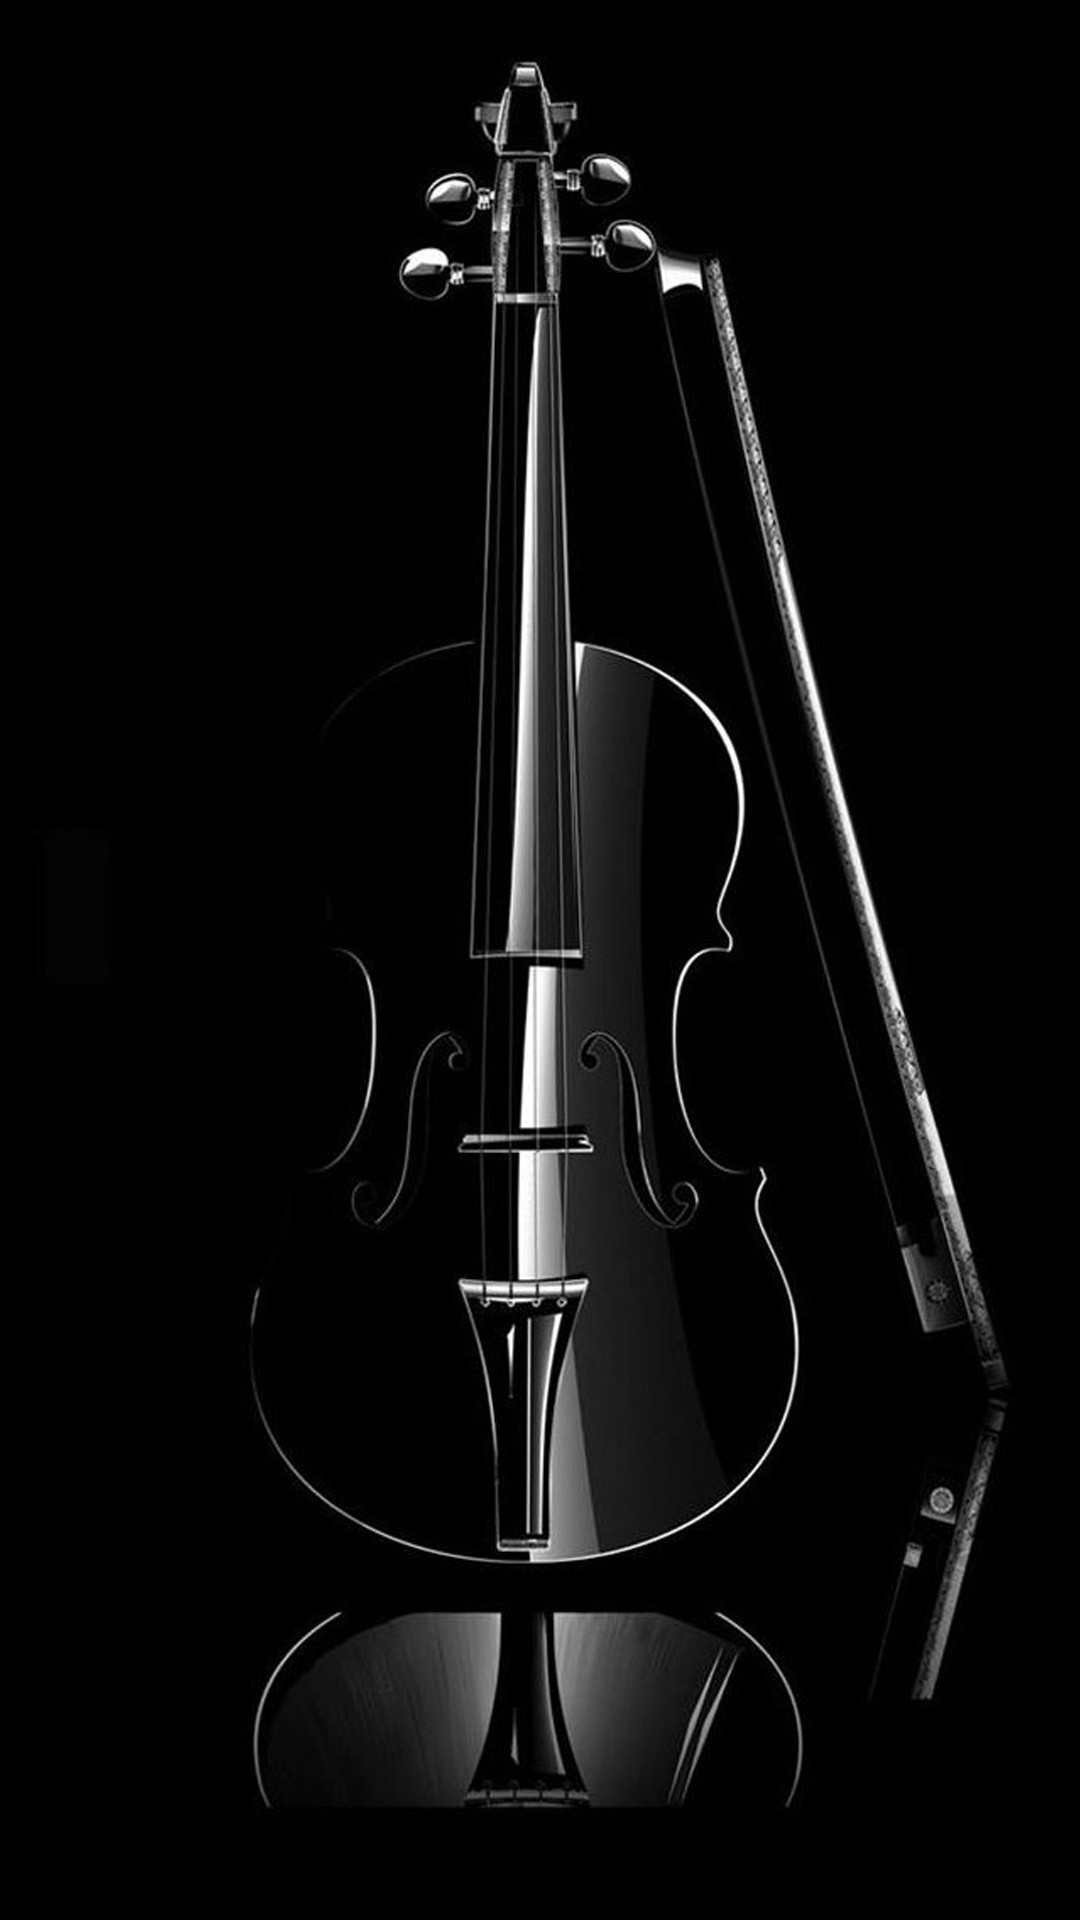 1080x1920 ... Elegant Cello Music Instrument iPhone 8 wallpaper.